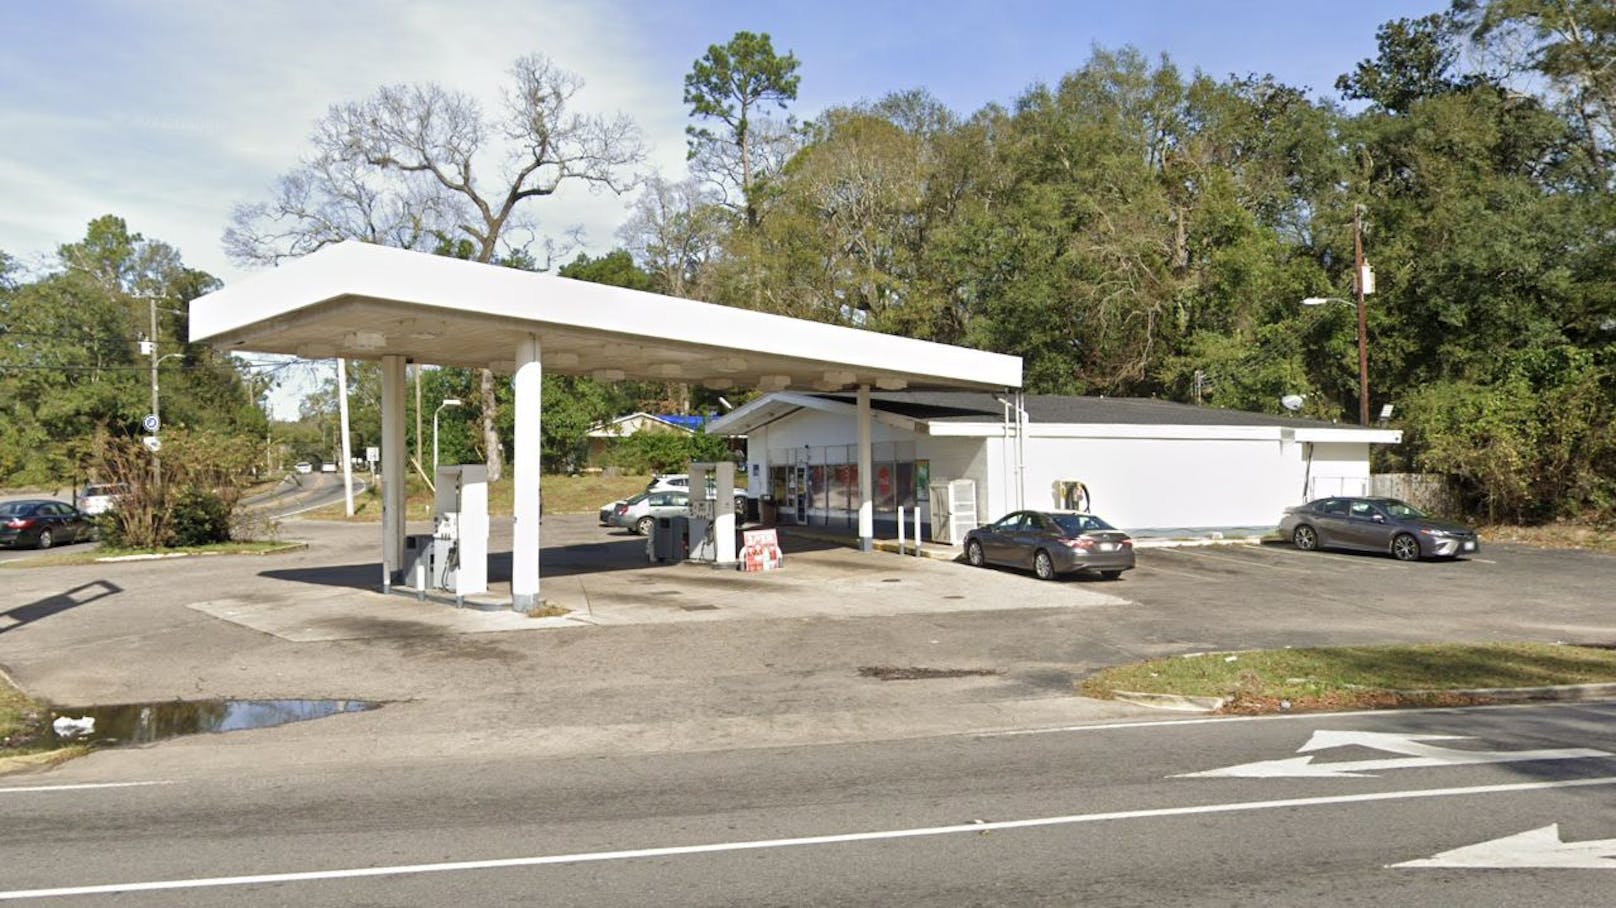 Auf dem Parkplatz dieser Tankstelle in Mobile, Alabama, wurde der abgetrennte Penis entdeckt.